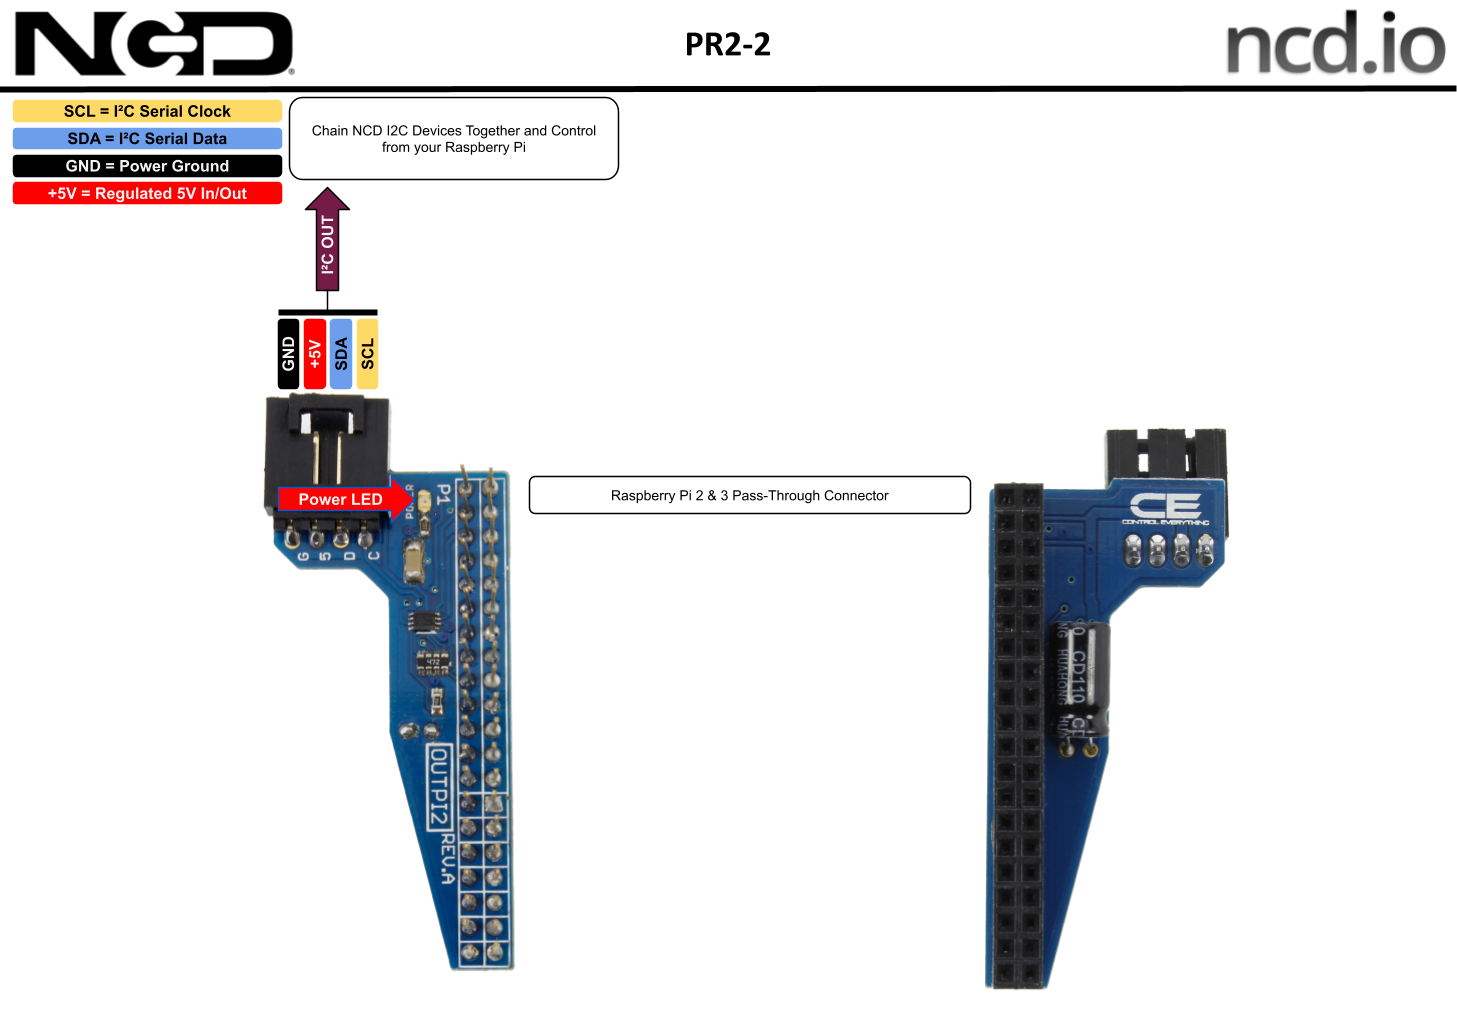 I2c Shield For Raspberry Pi 4 Pi 3 And Pi 2 With Outward Facing I2c Port 2796